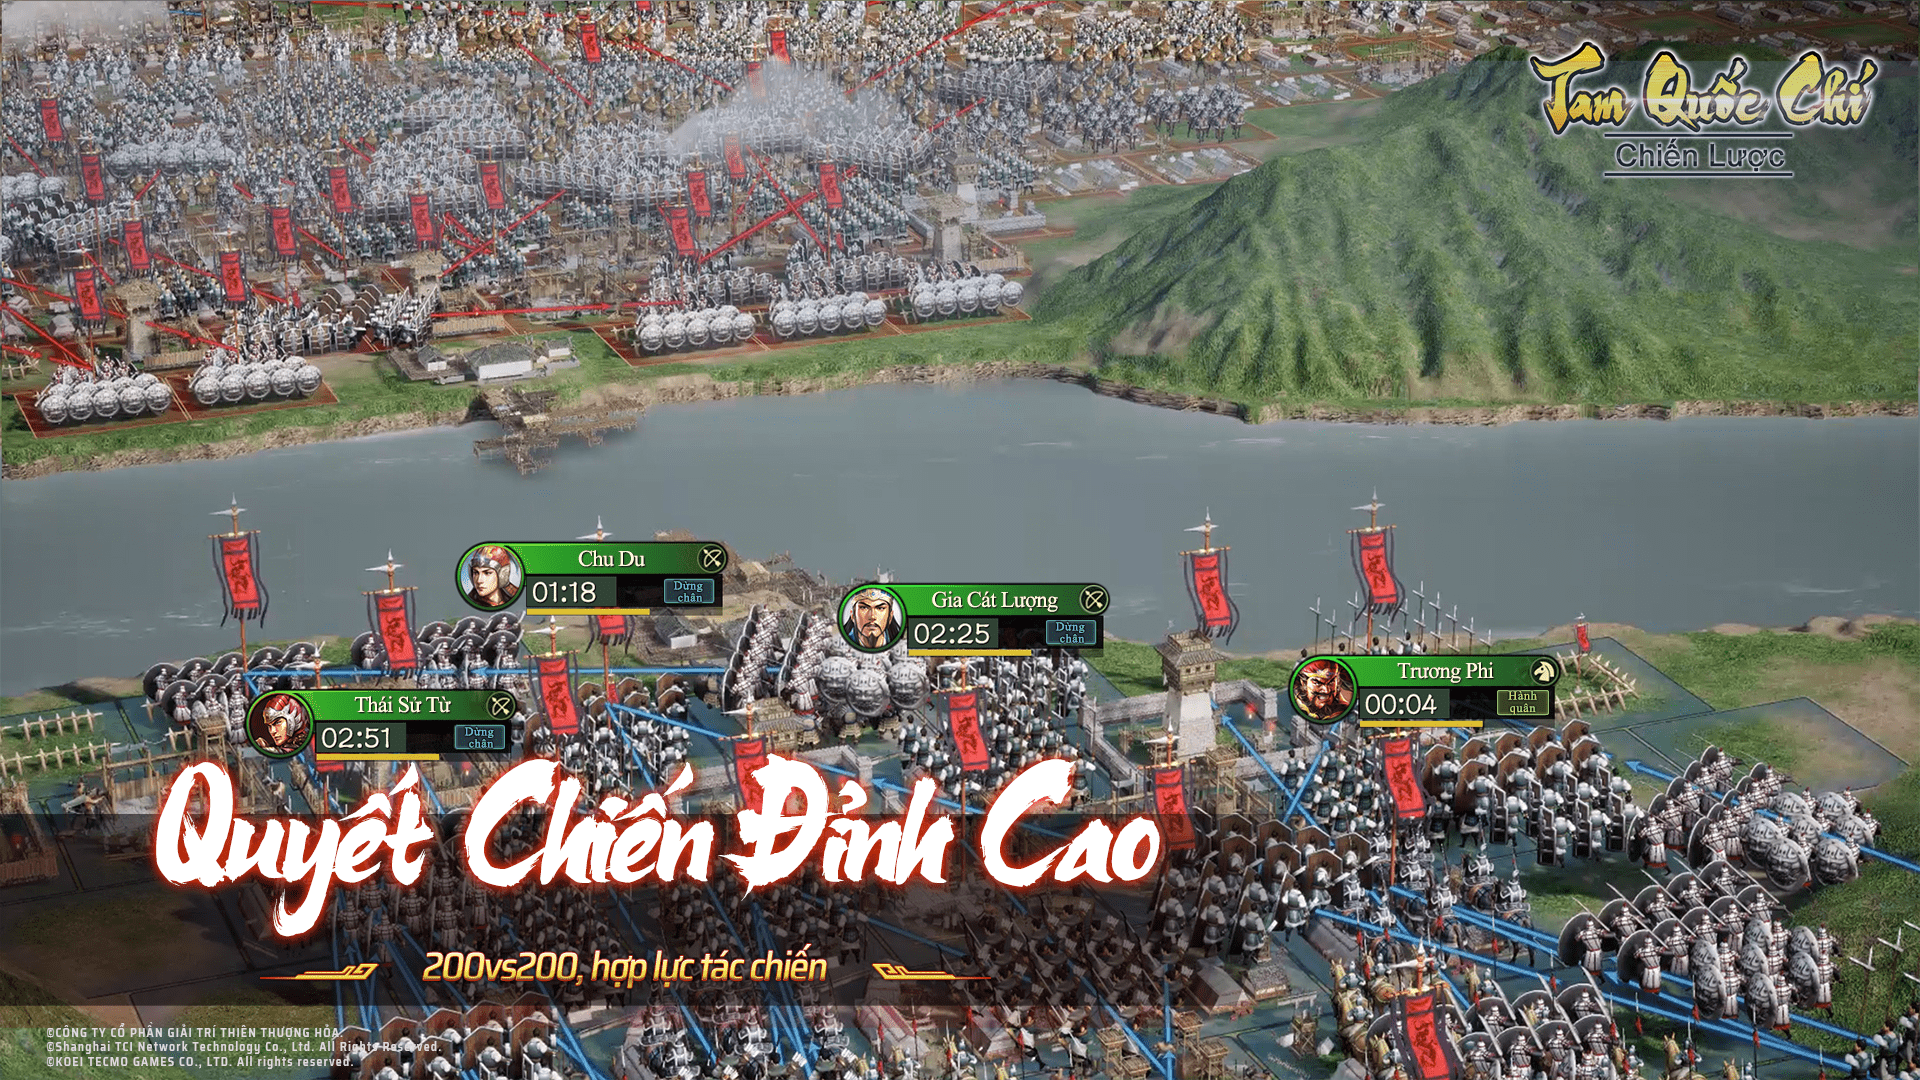 Vượt 80 triệu người chơi trên toàn cầu, Tam Quốc Chí – Chiến Lược mở đăng ký trước phiên bản Open Beta tại Việt Nam